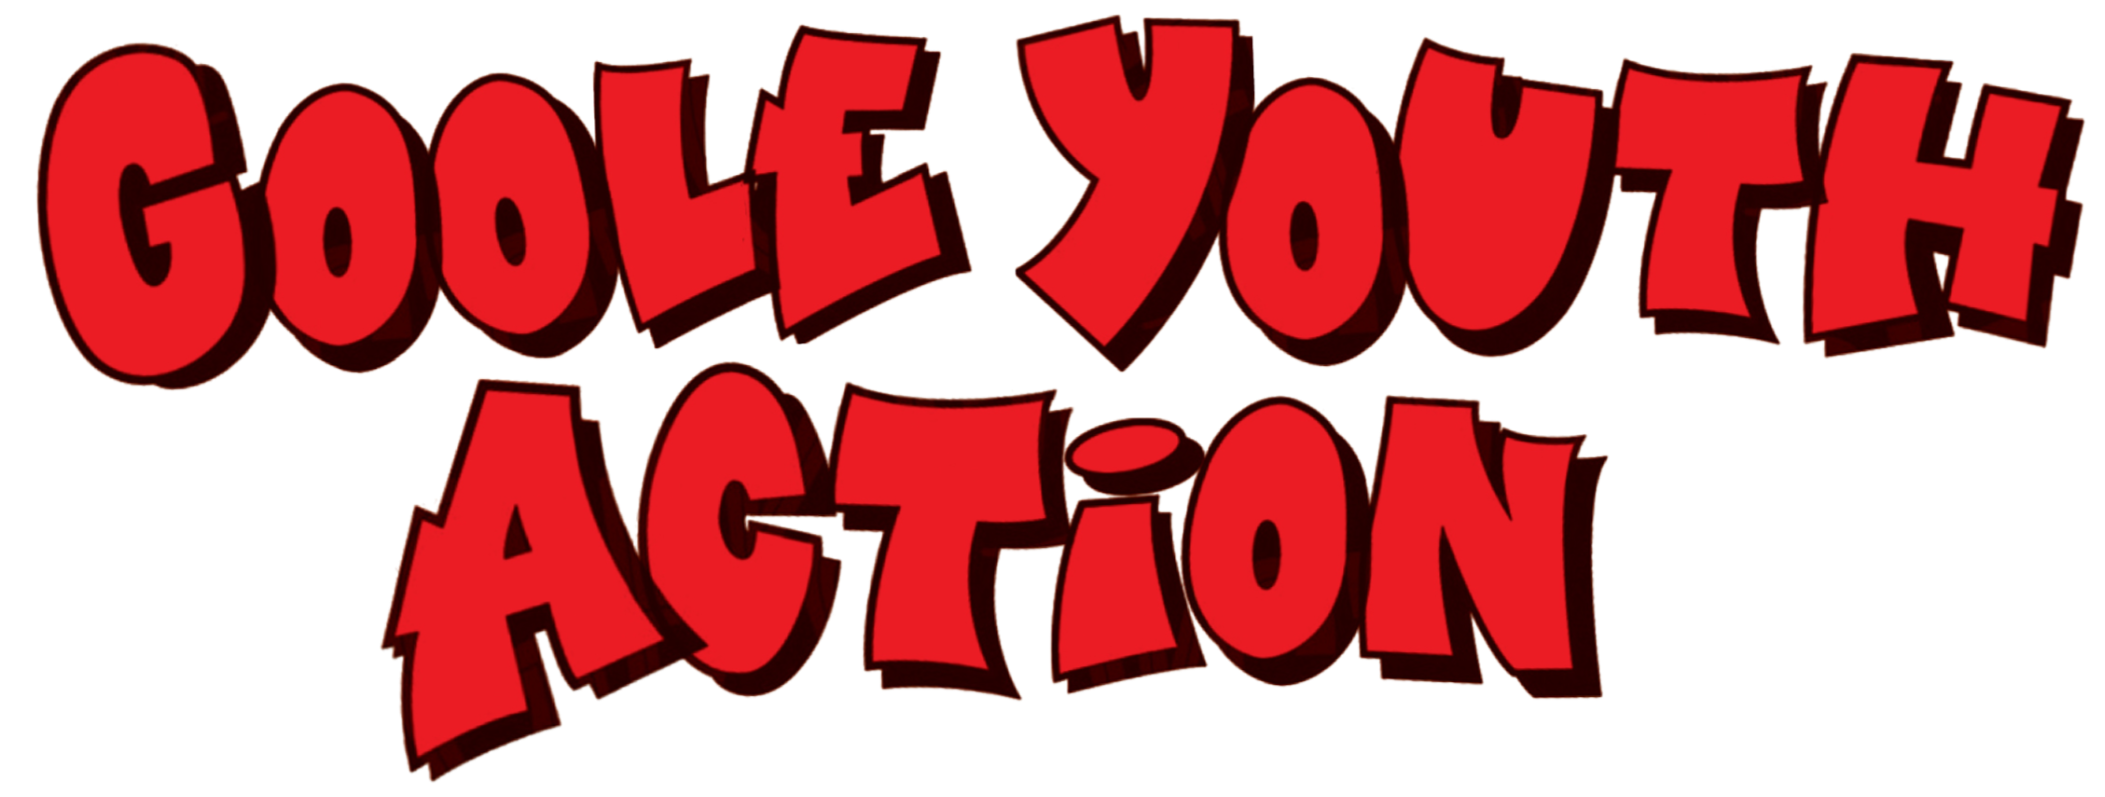 Goole Youth Action logo